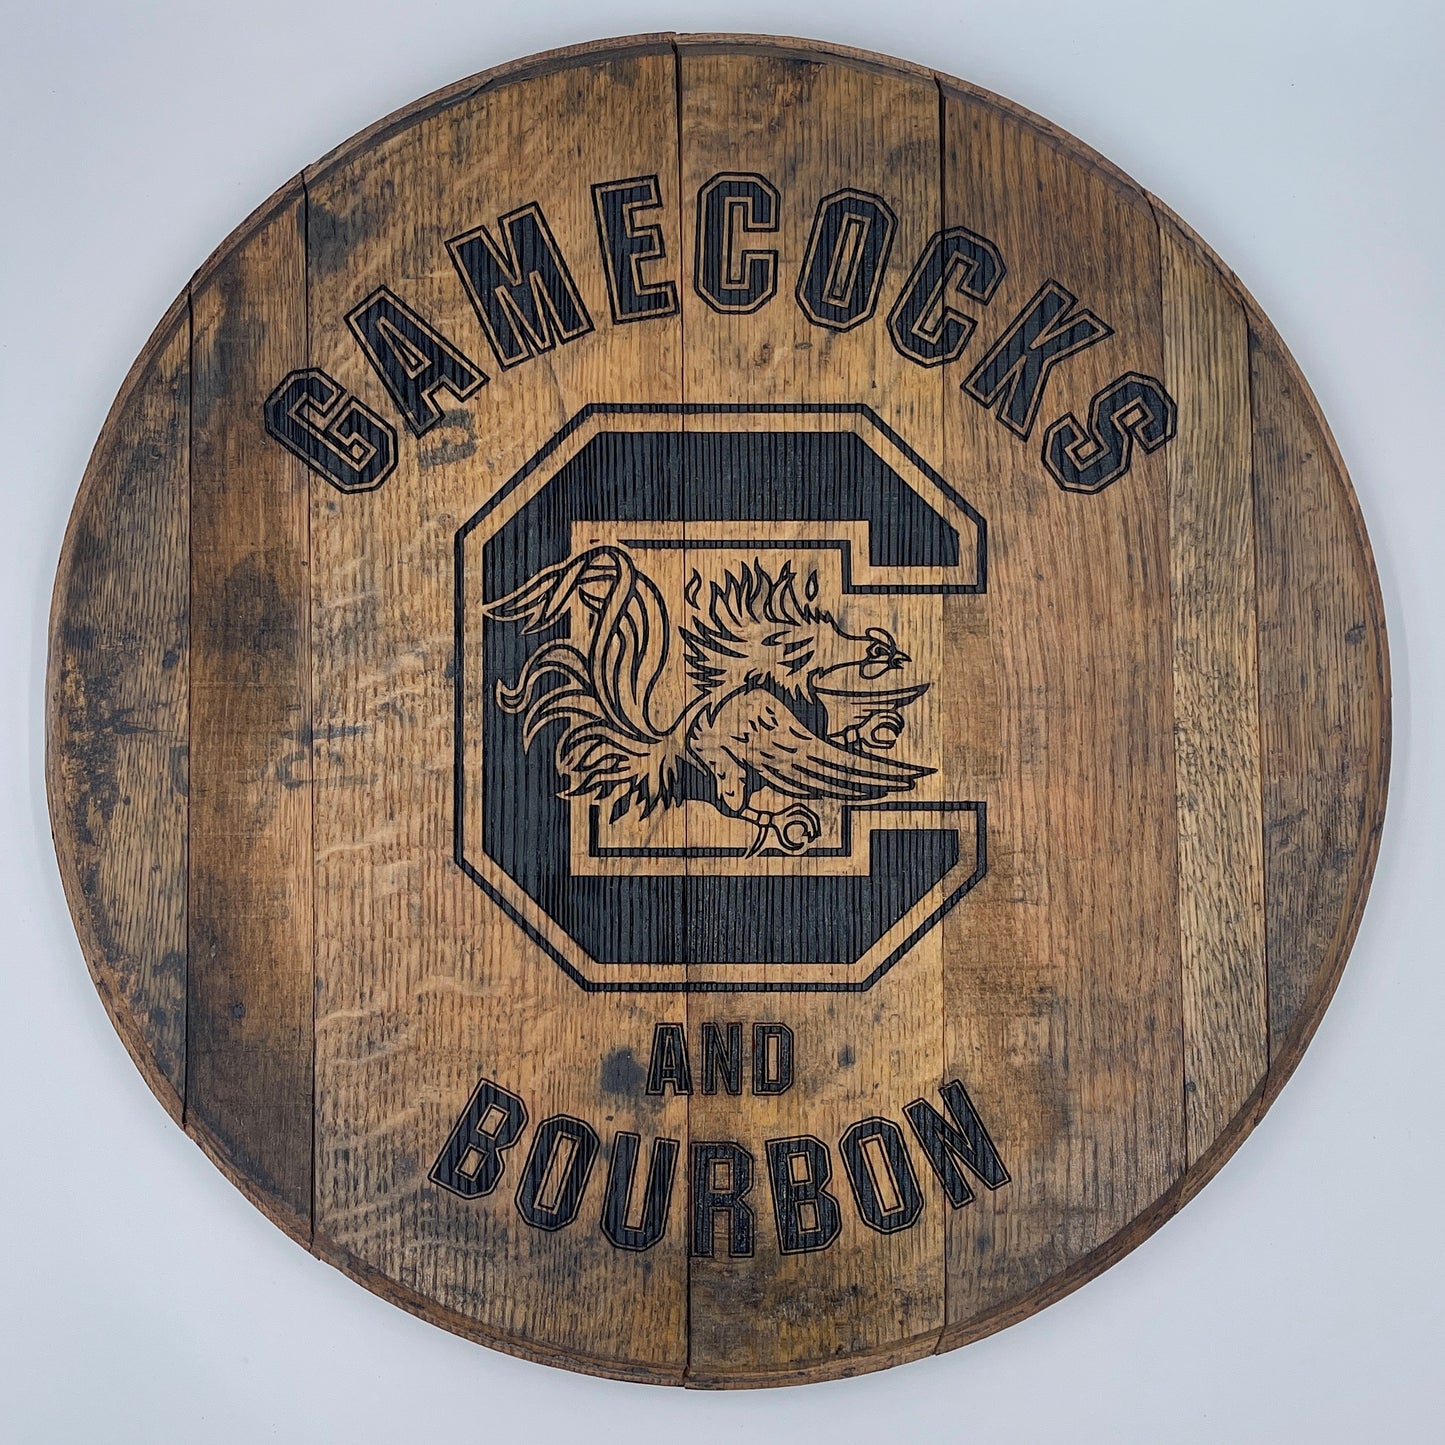 Gamecocks and Bourbon